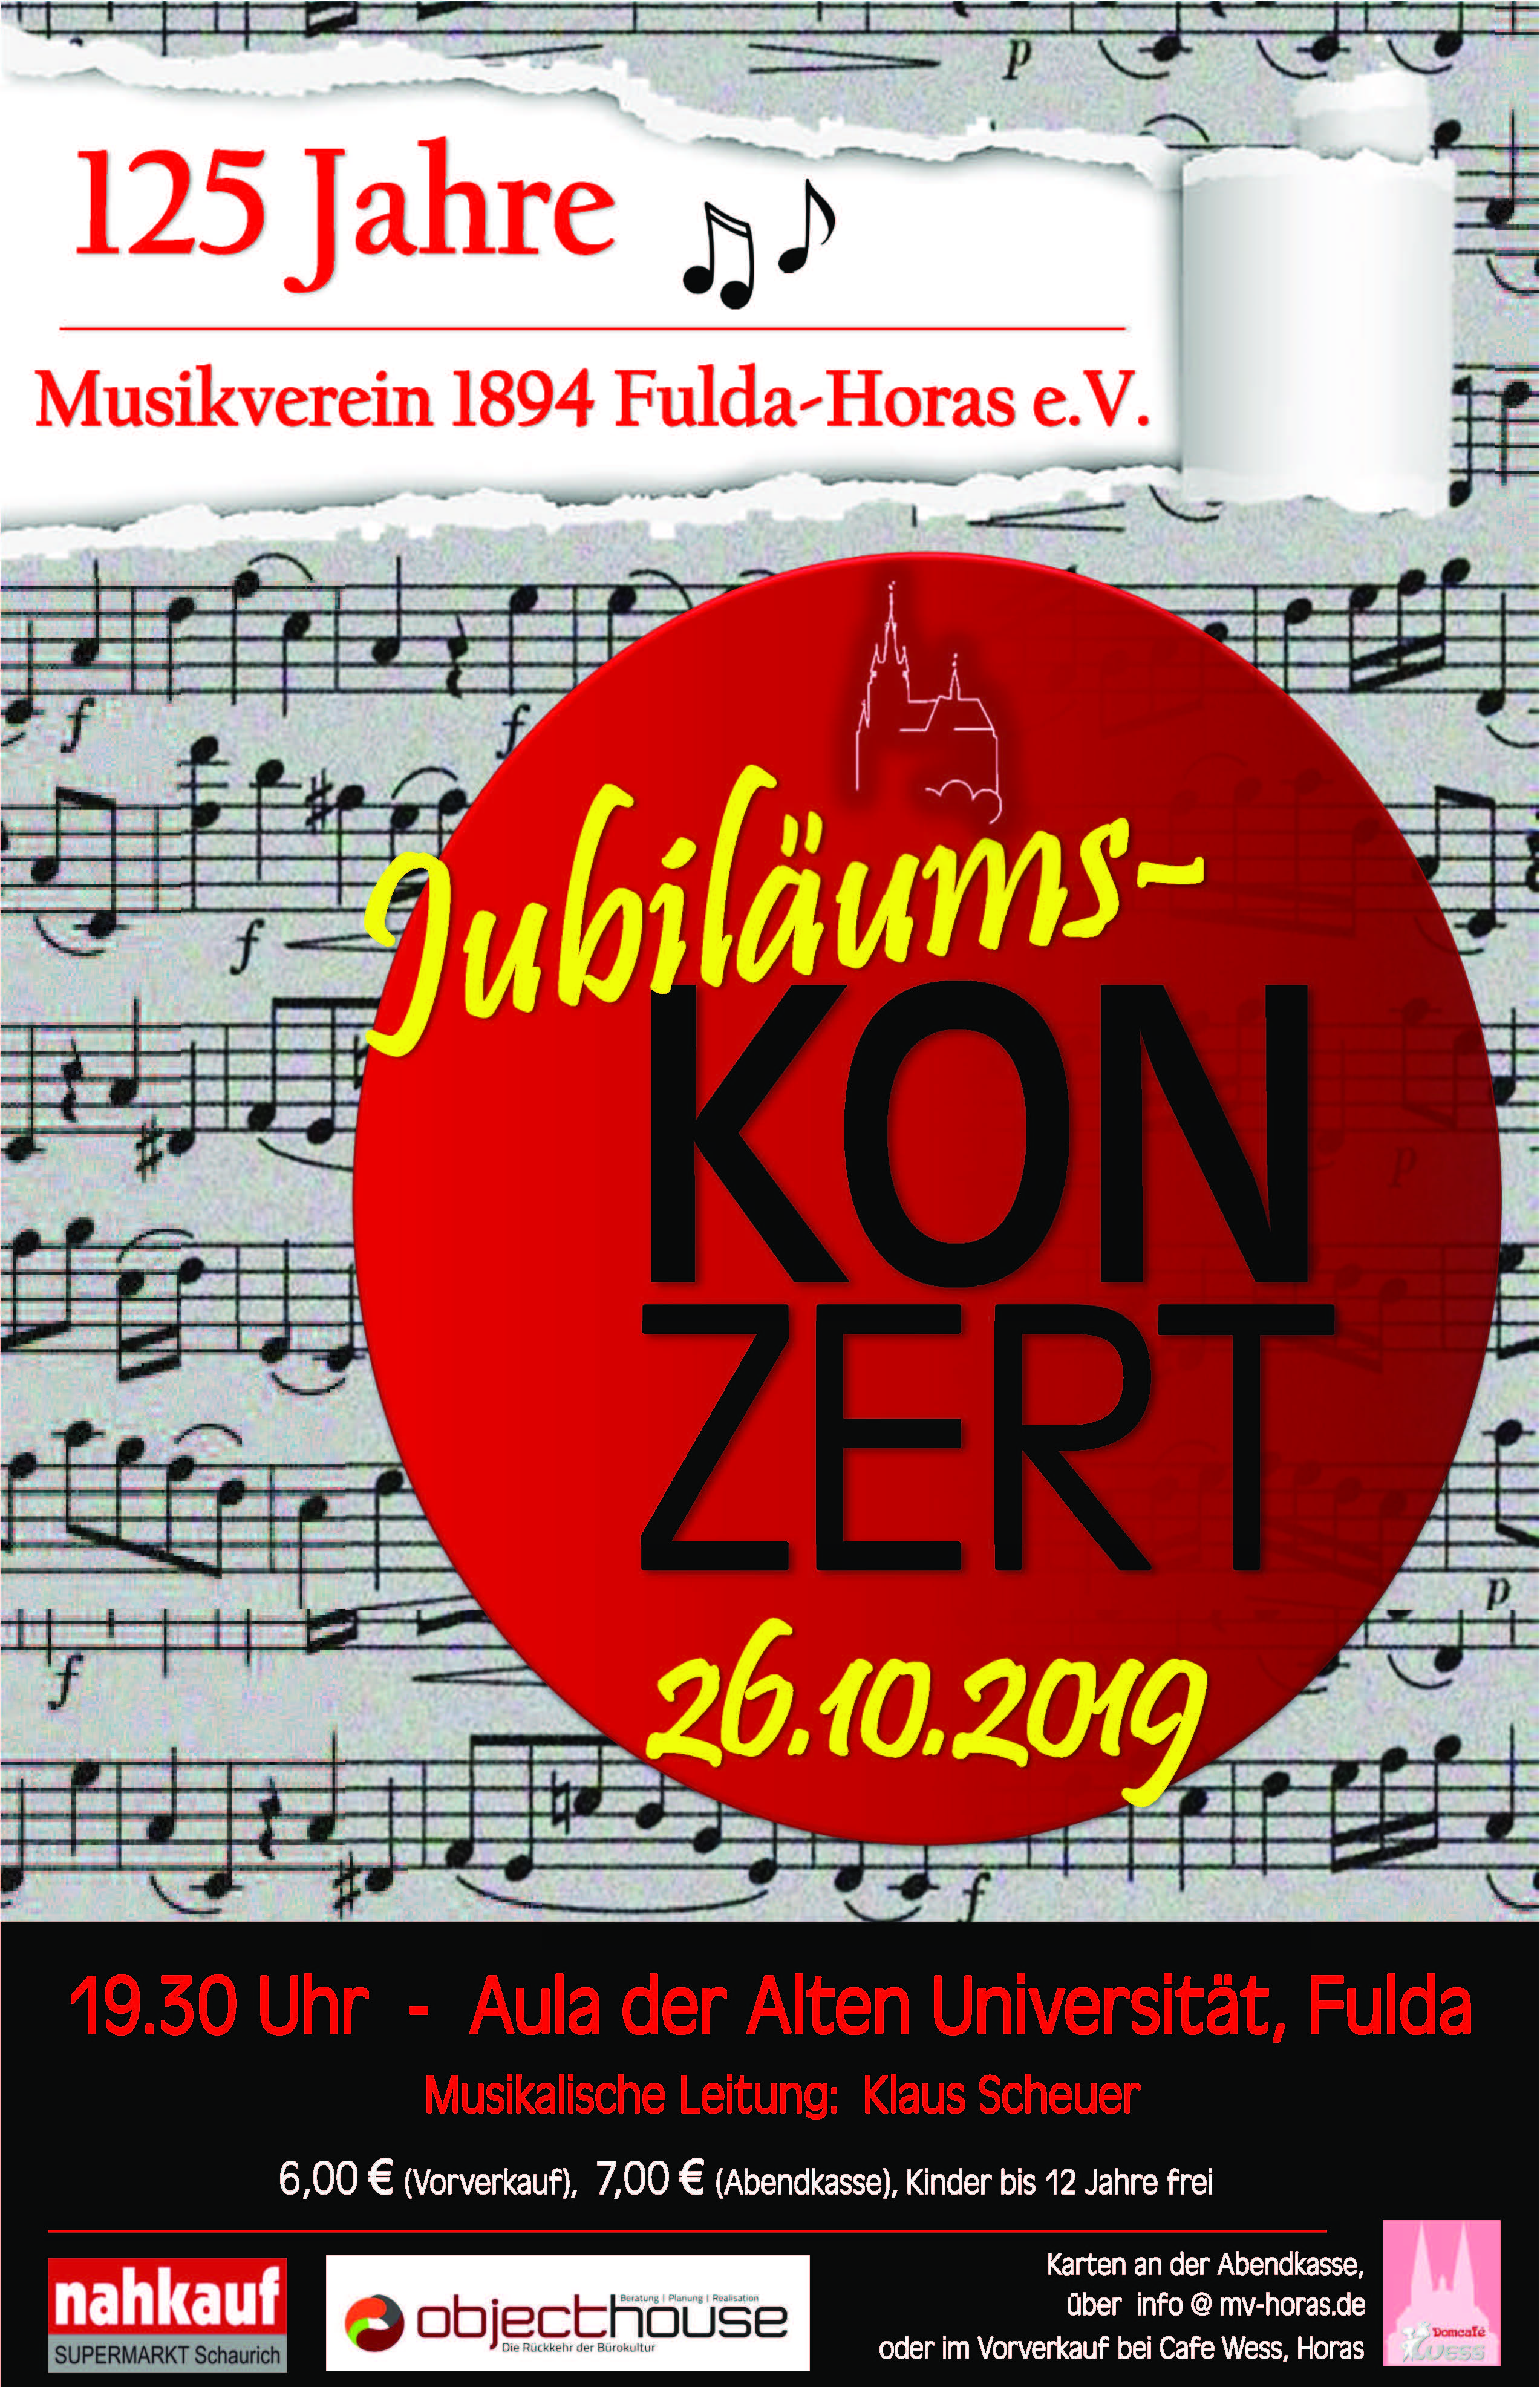 125 Jahre Musikverein Fulda-Horas